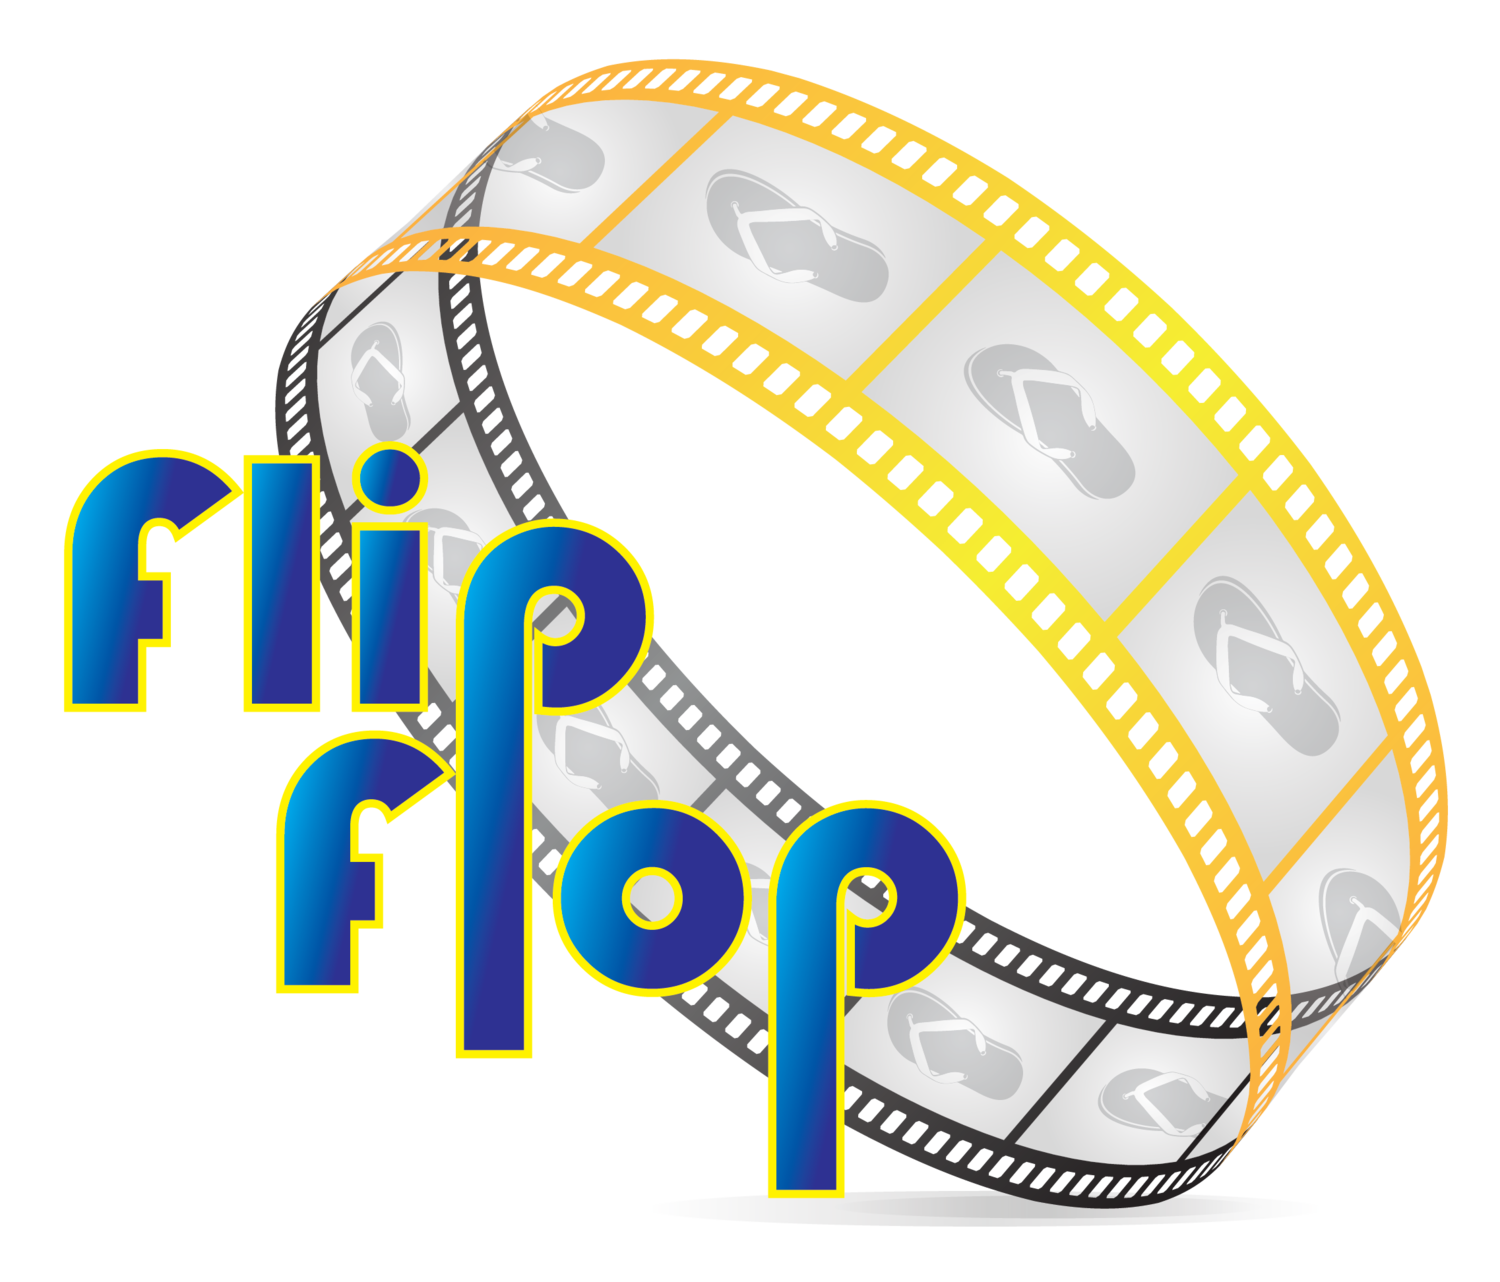 Flip Flop Productions